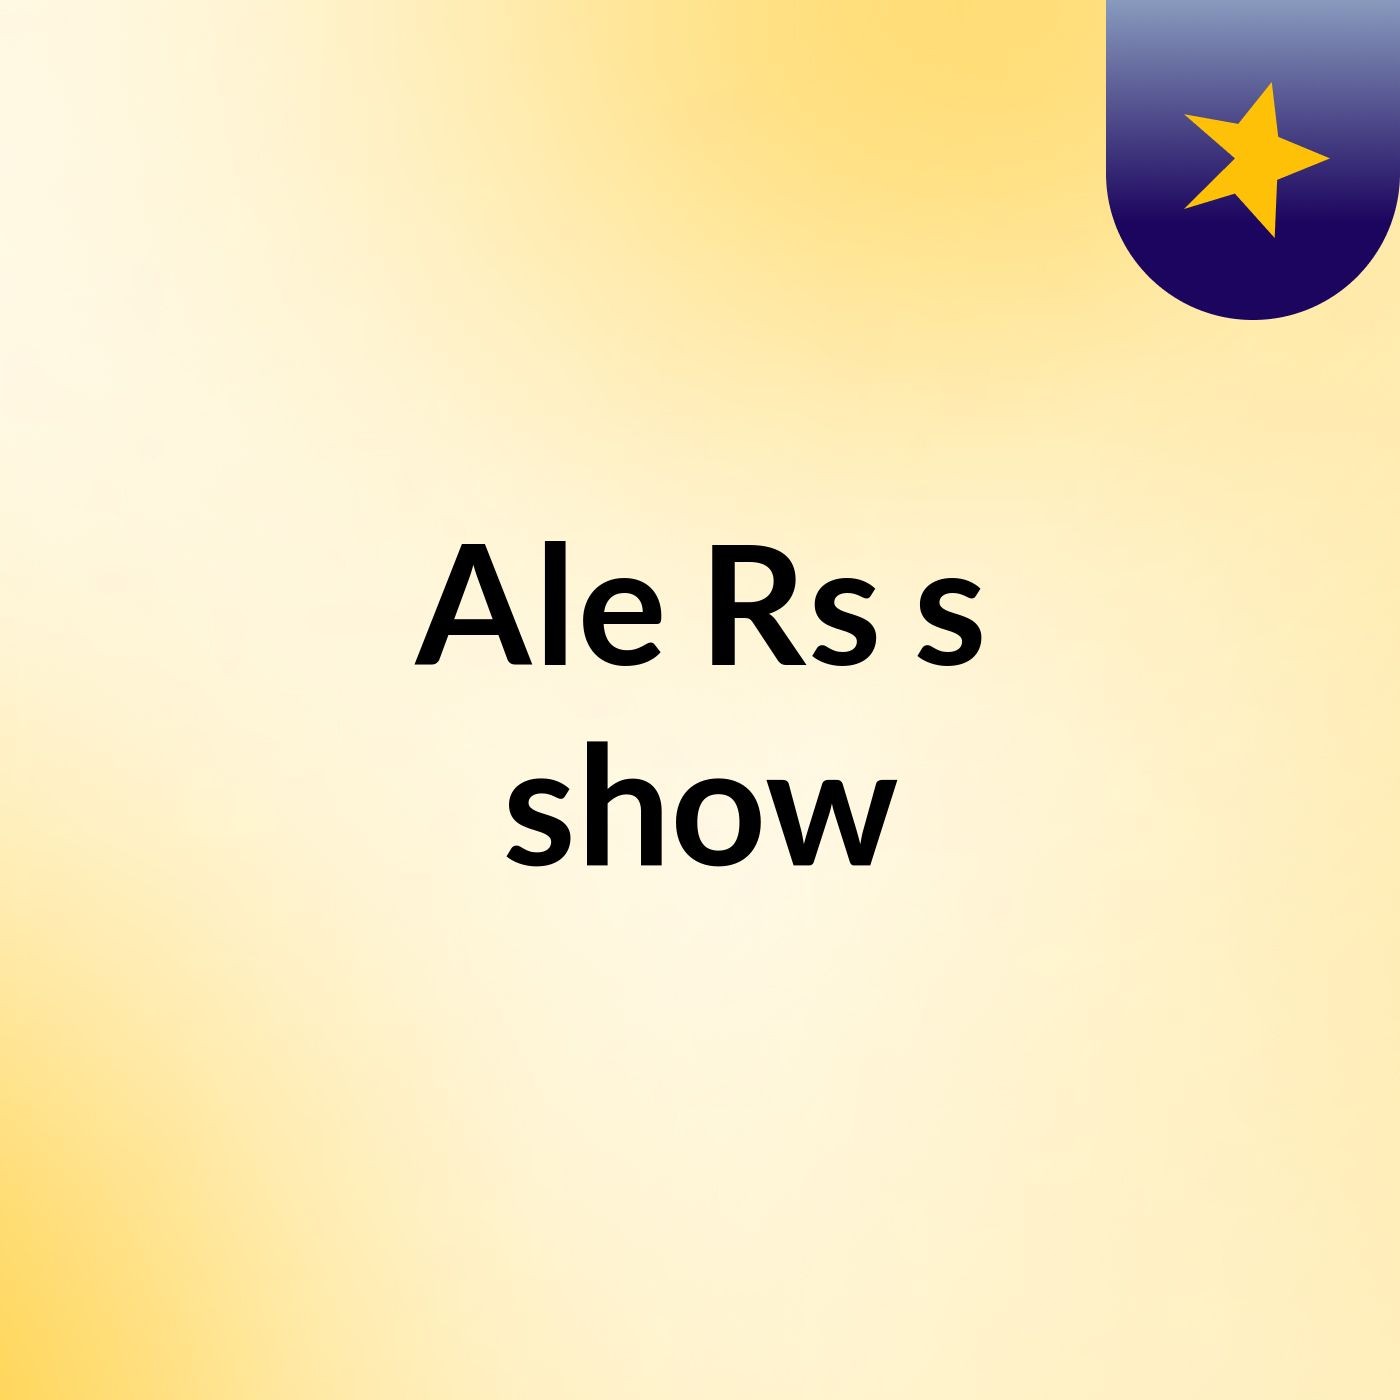 Ale Rs's show